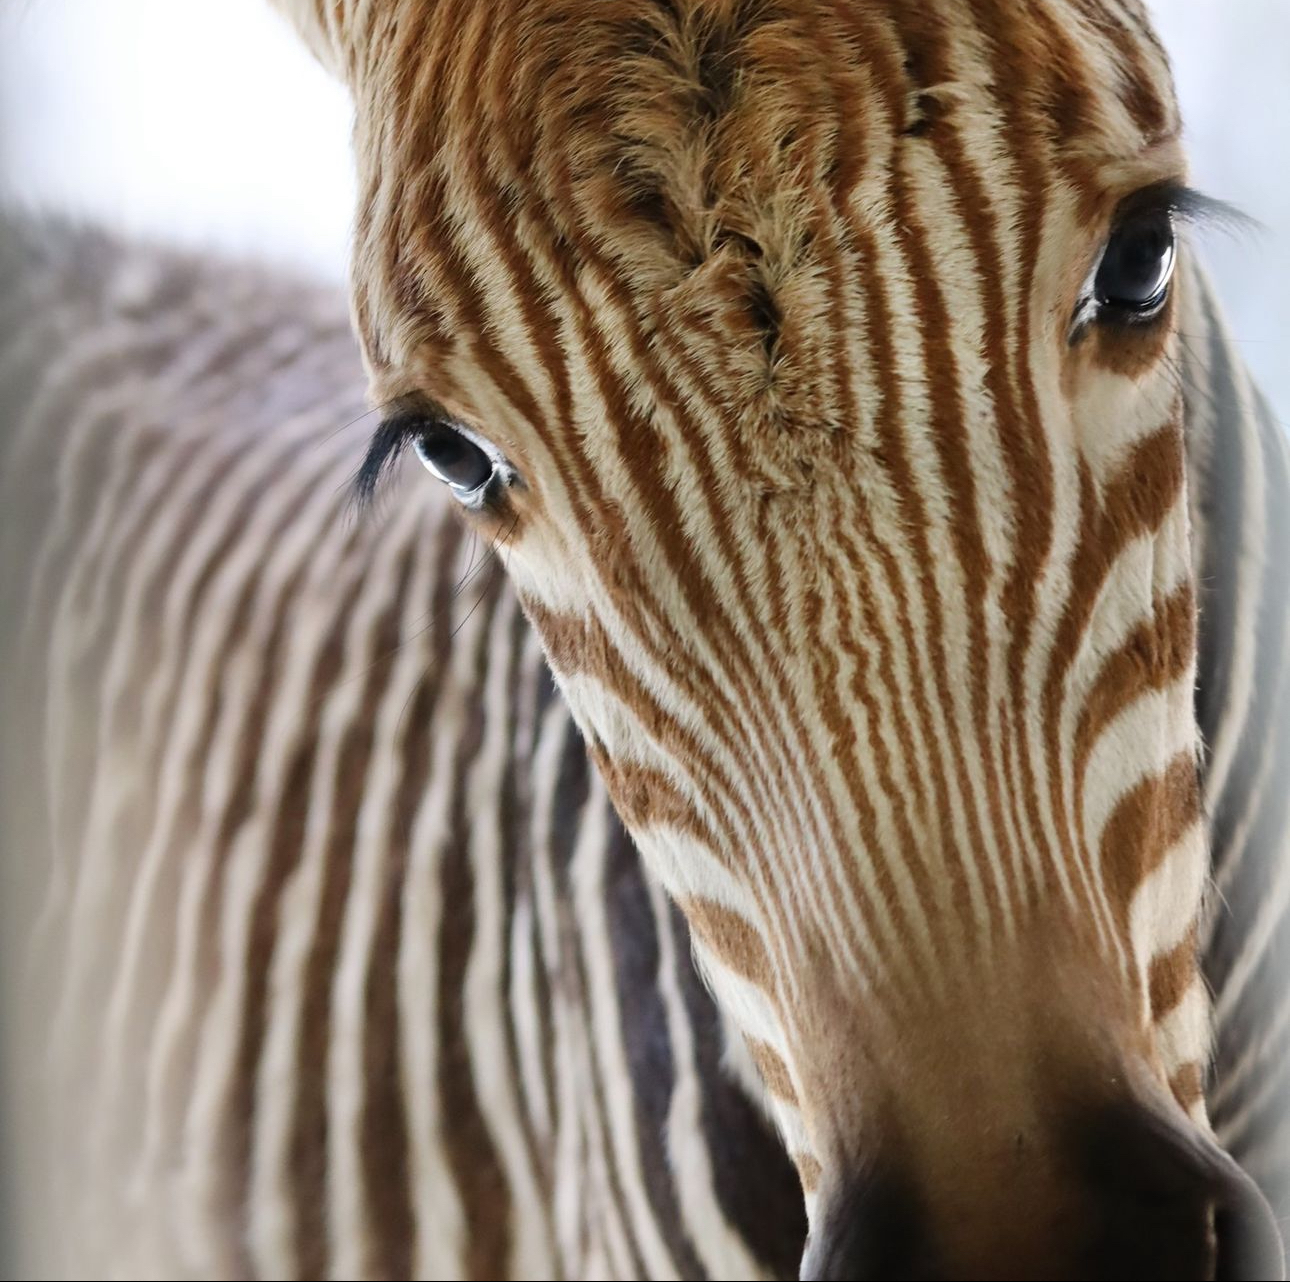 zebra foal